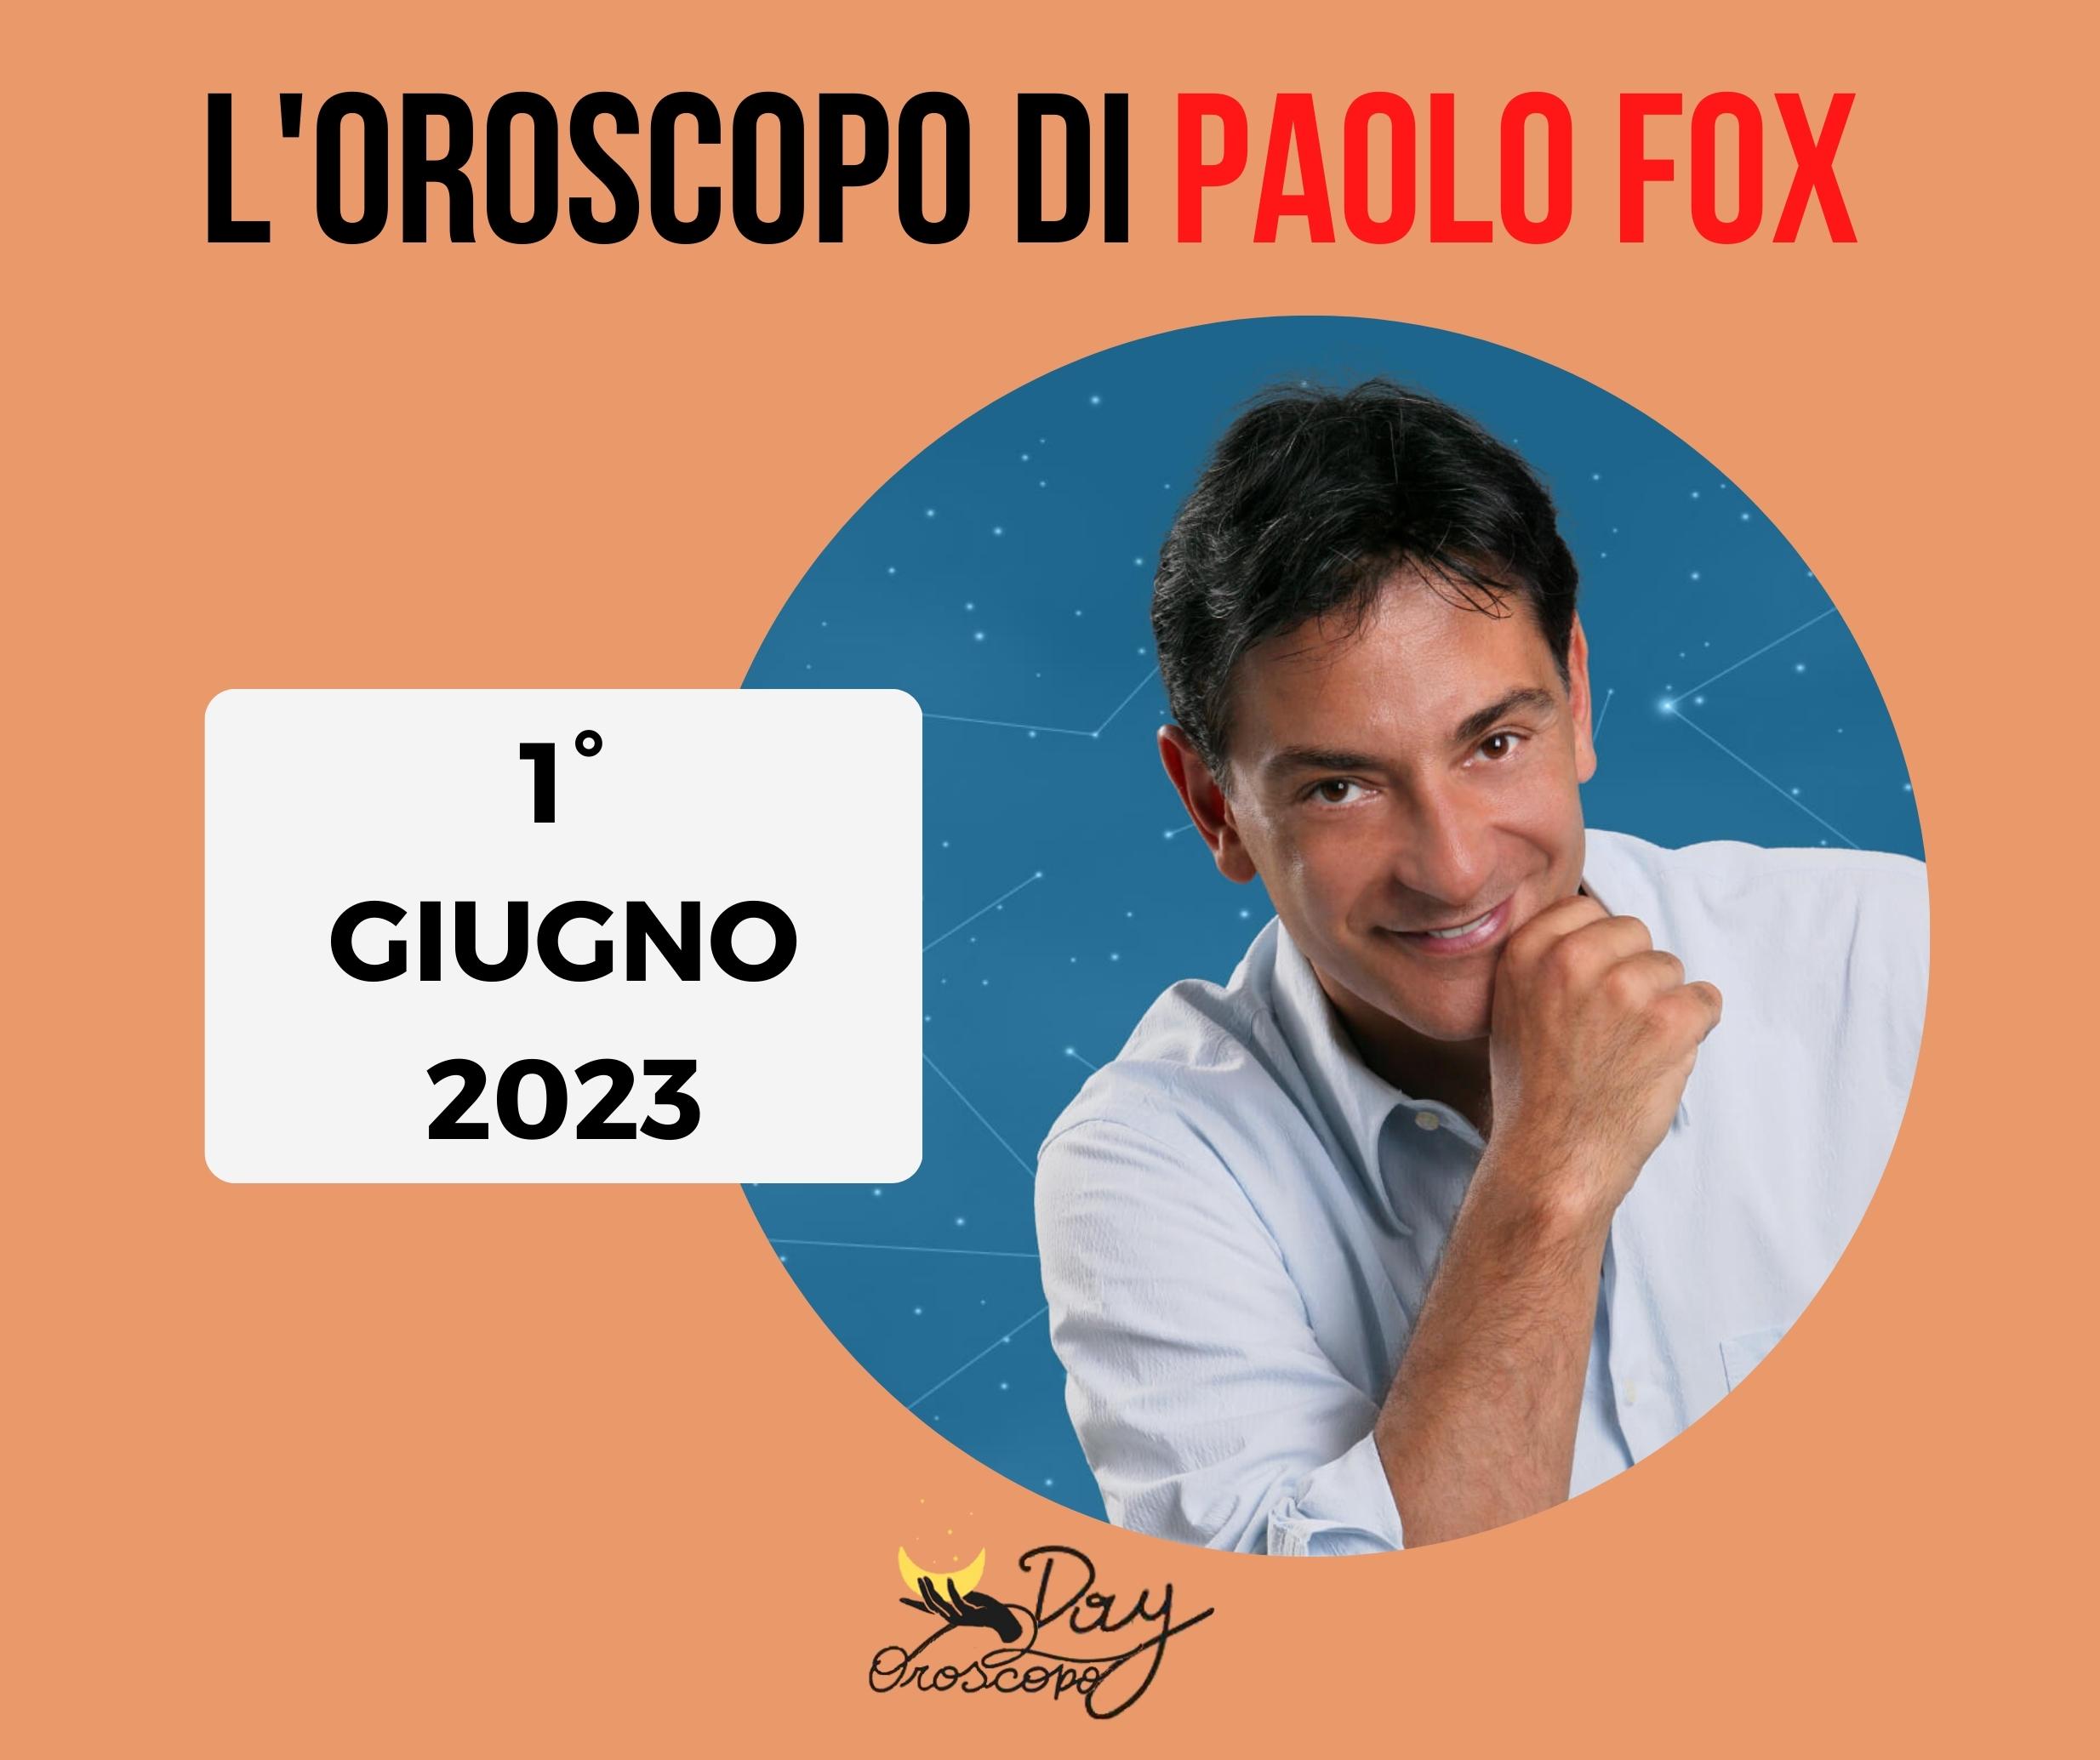 Oroscopo oggi domani Paolo Fox 1 giugno 2023